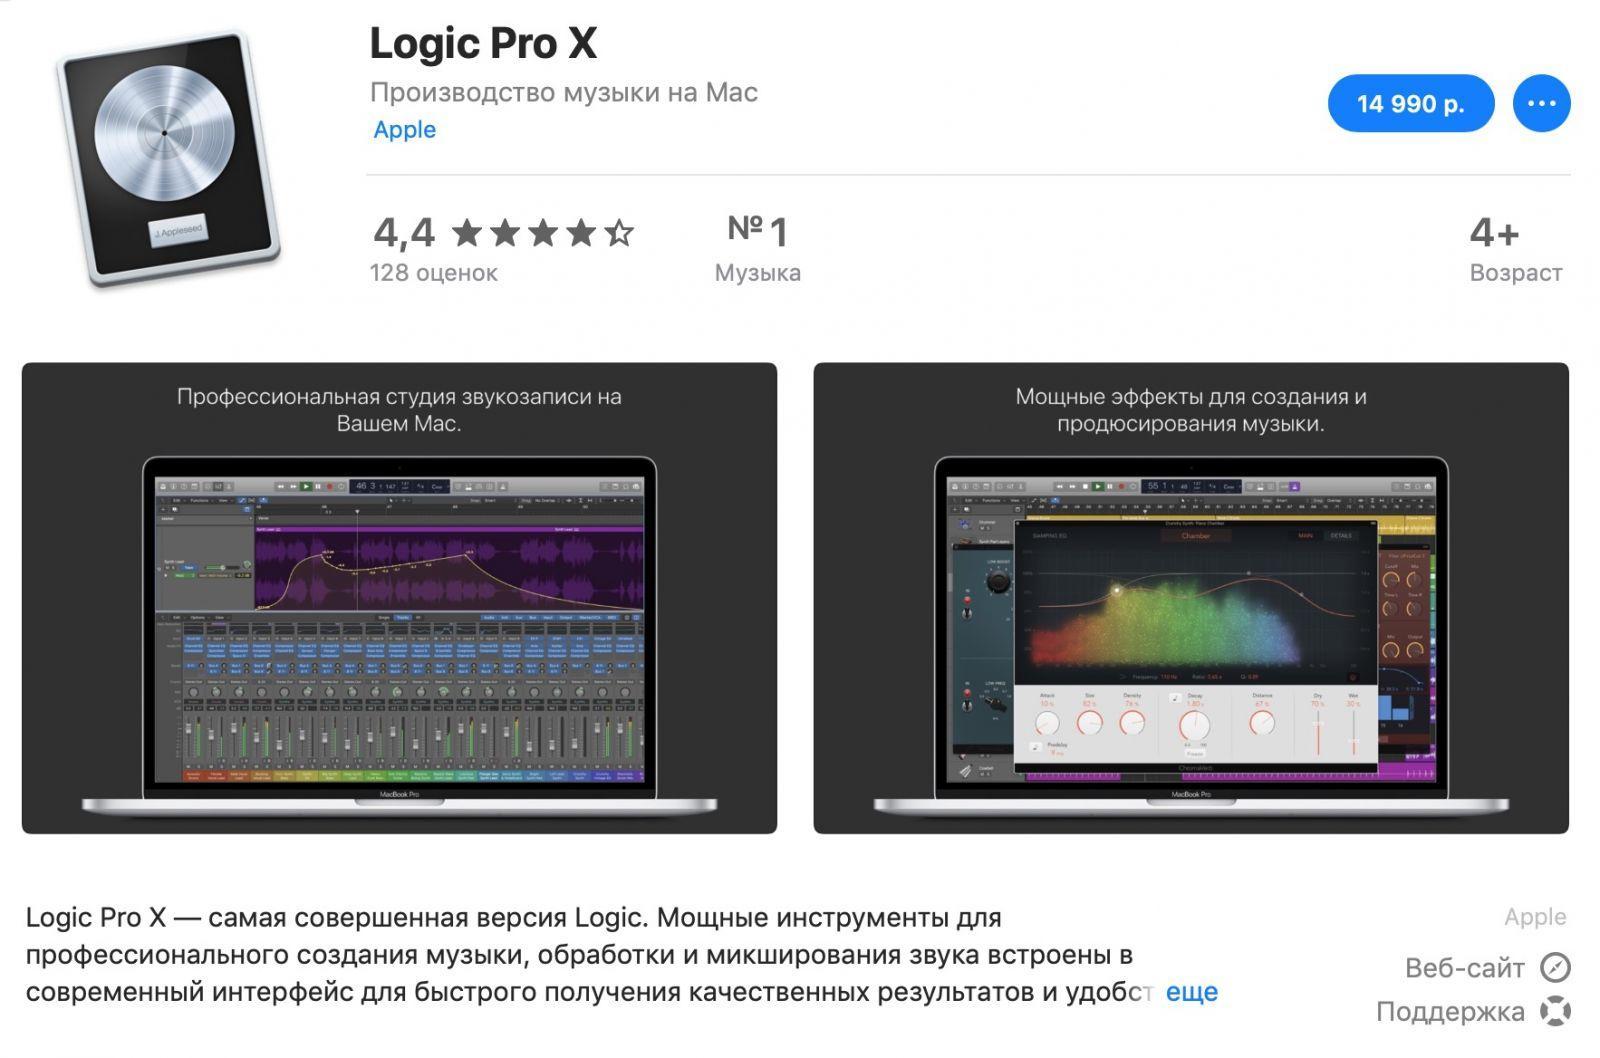 В Final Cut Pro X и Logic Pro X появился 90-дневный пробный период (logic pro)